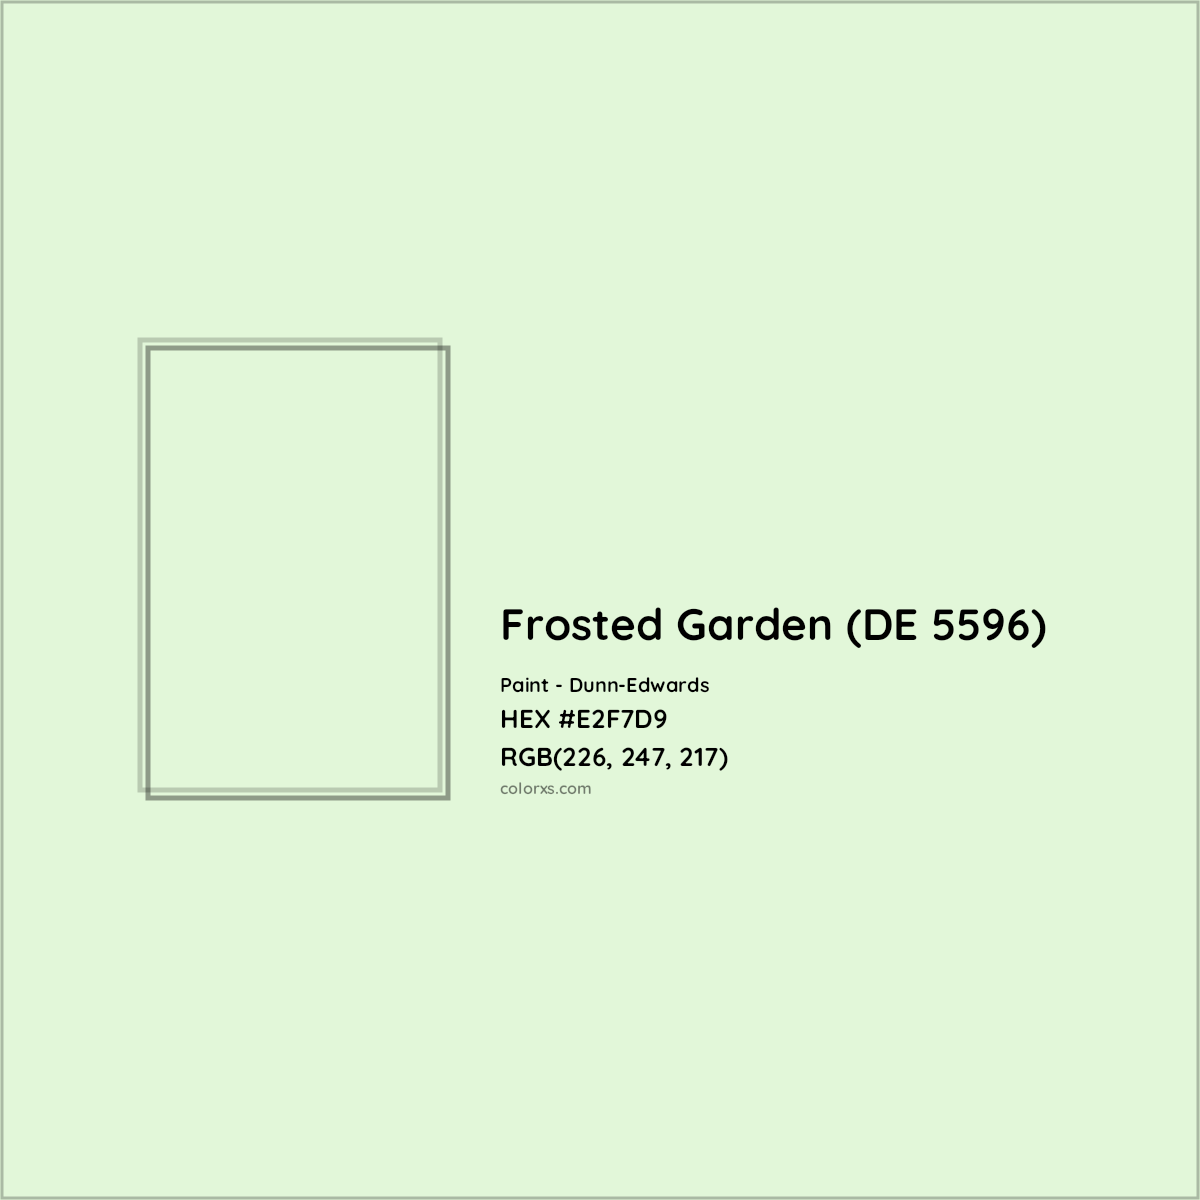 HEX #E2F7D9 Frosted Garden (DE 5596) Paint Dunn-Edwards - Color Code